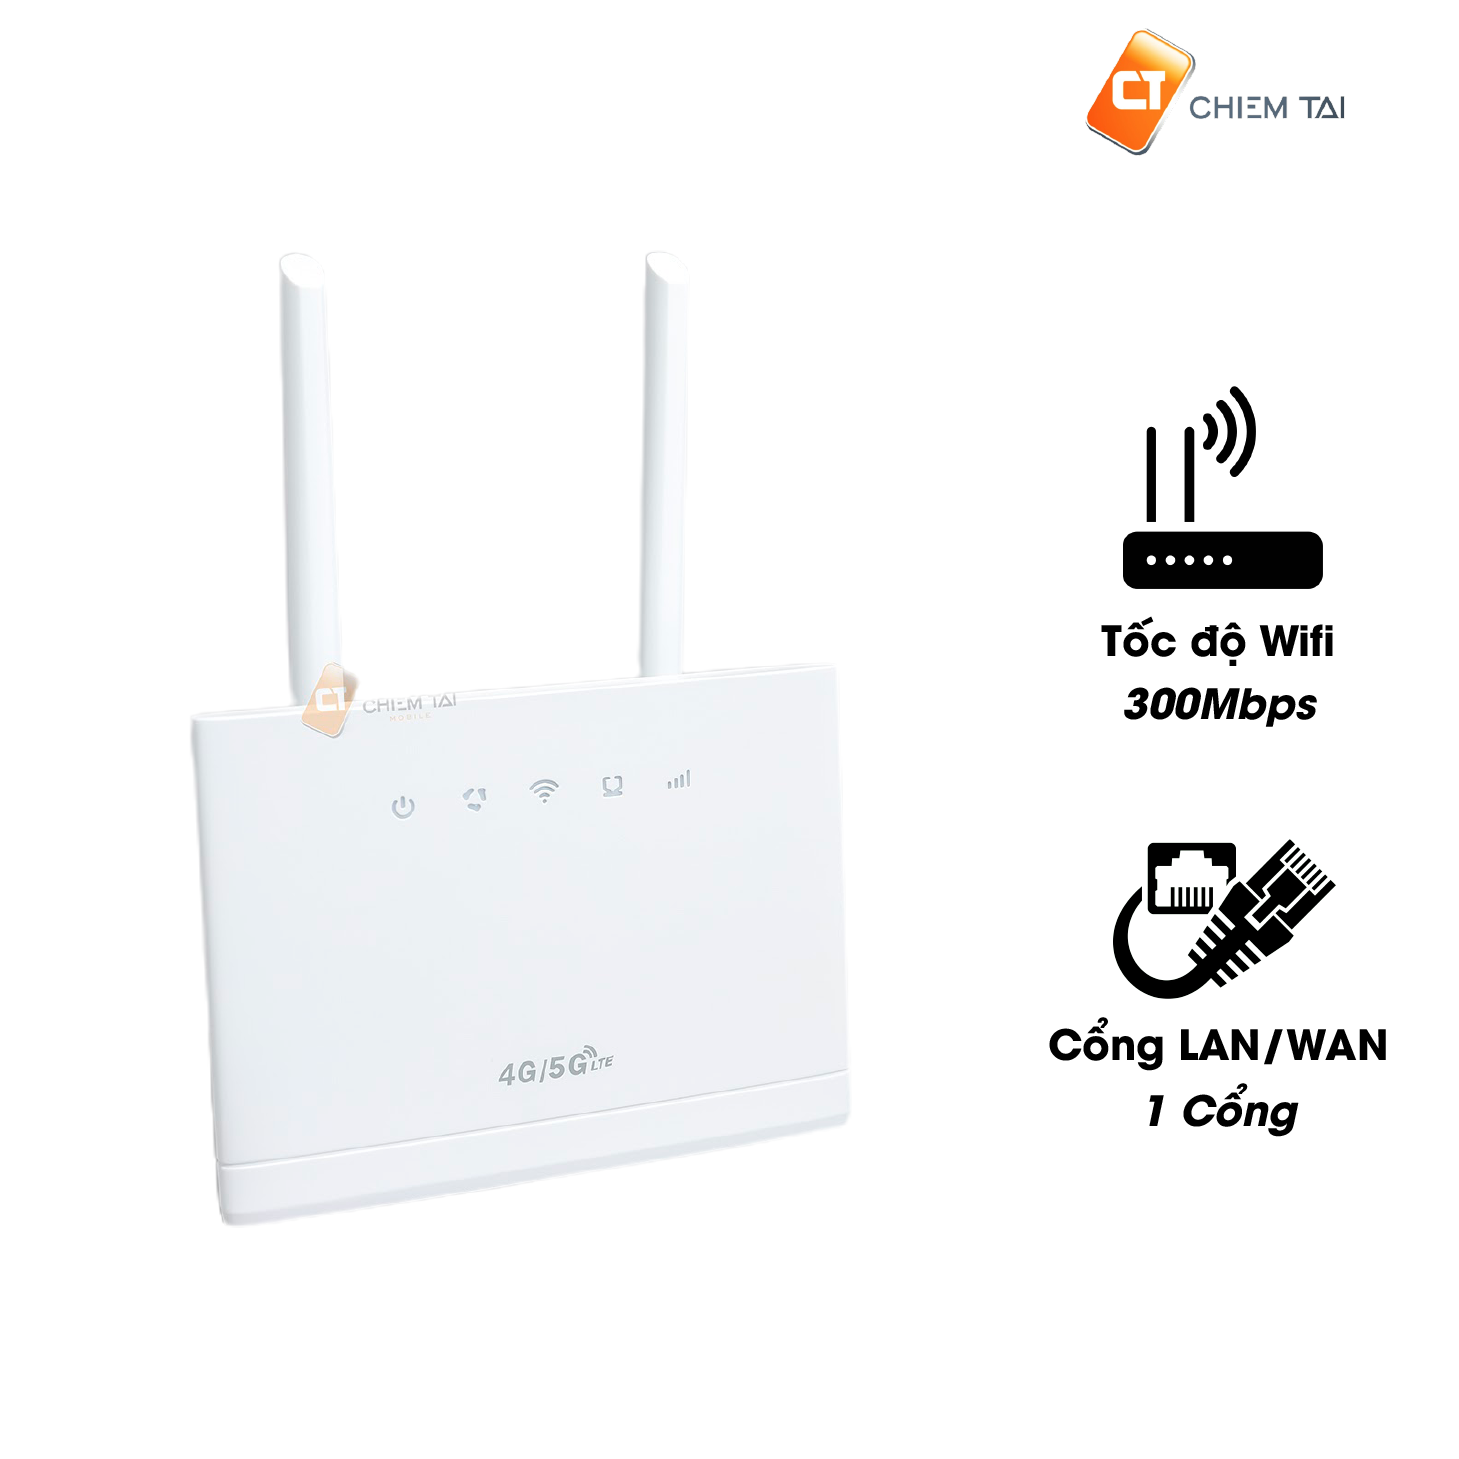 Bộ phát router wifi 4G Hilink đang được bán tại Chiêm Tài Mobile